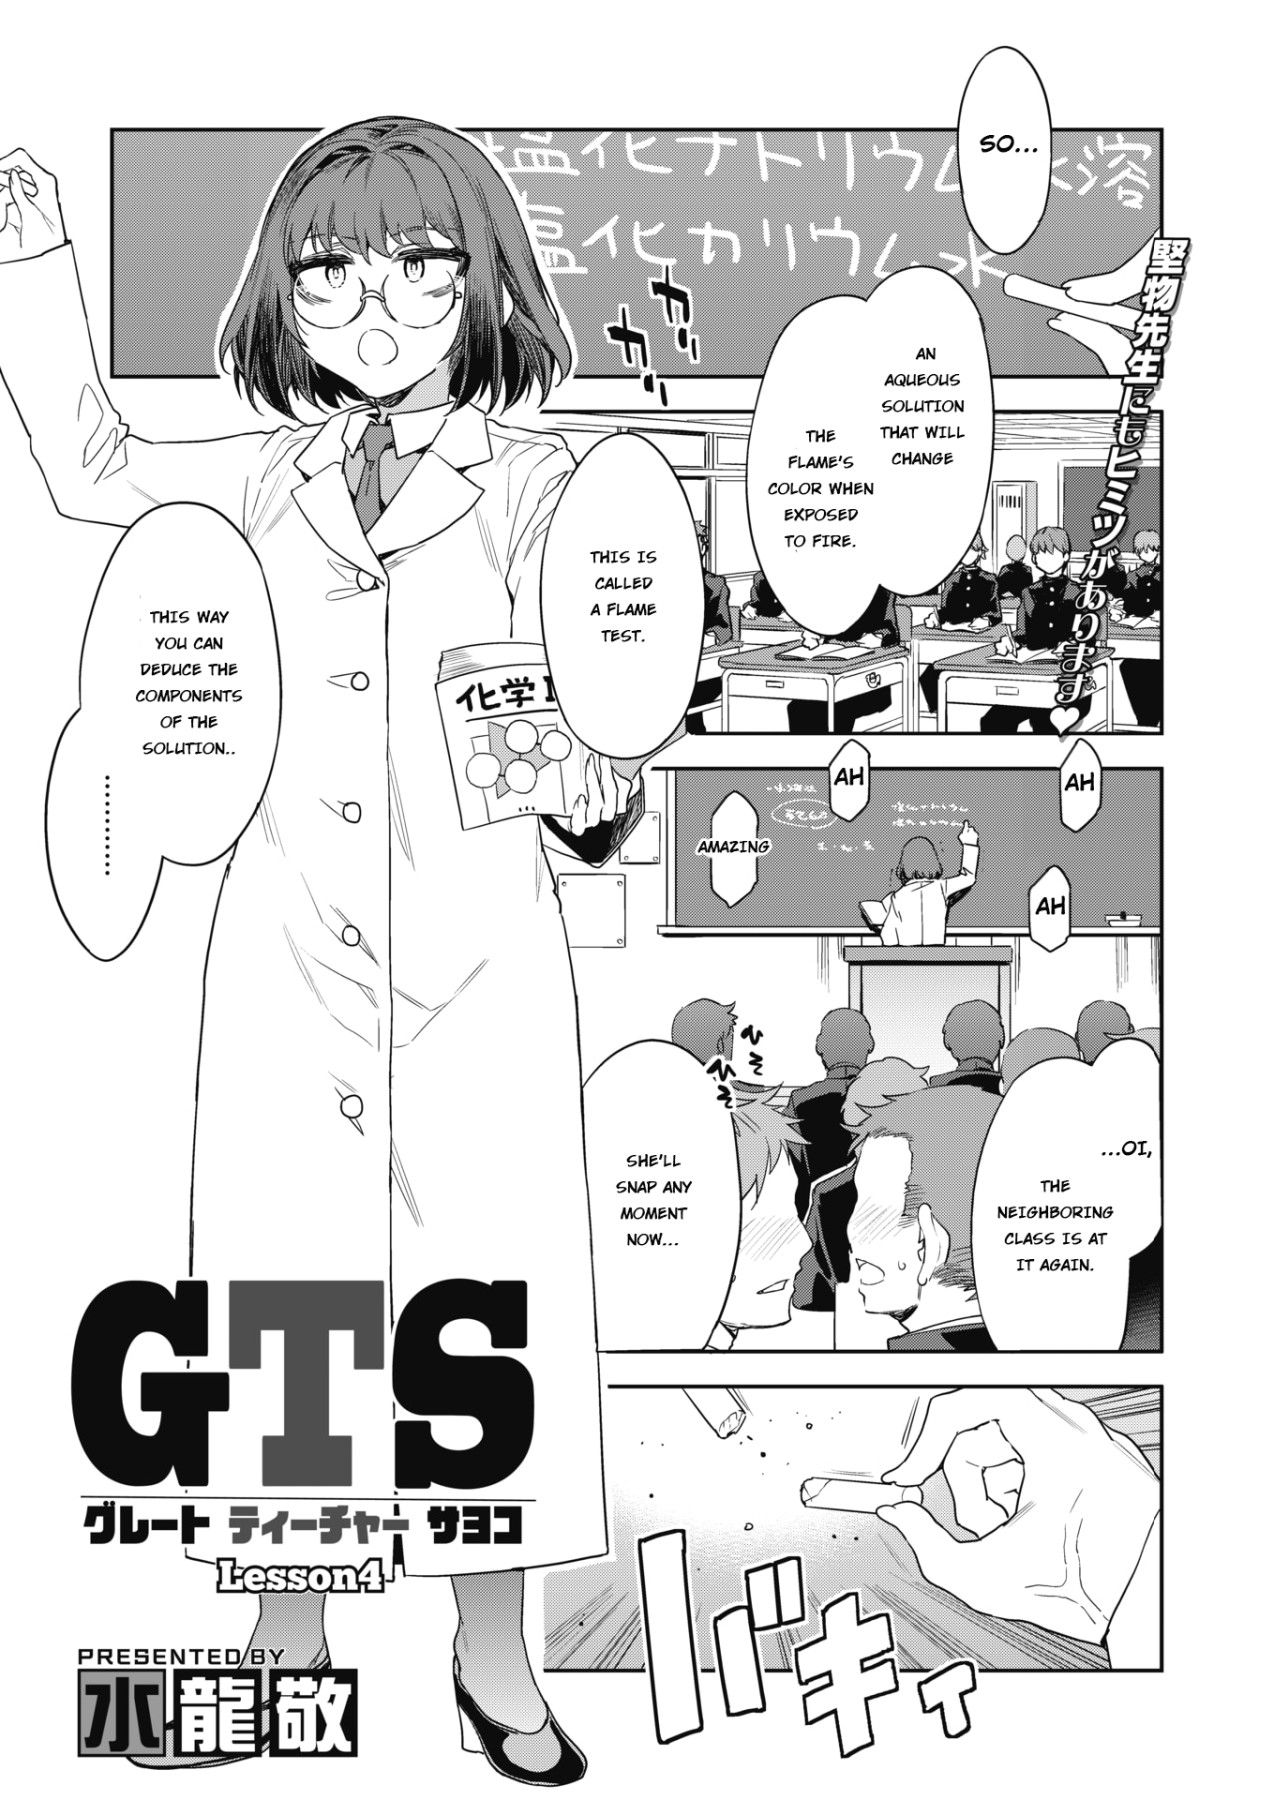 Hentai Manga Comic-GTS Great Teacher Sayoko Lesson 4-Read-1